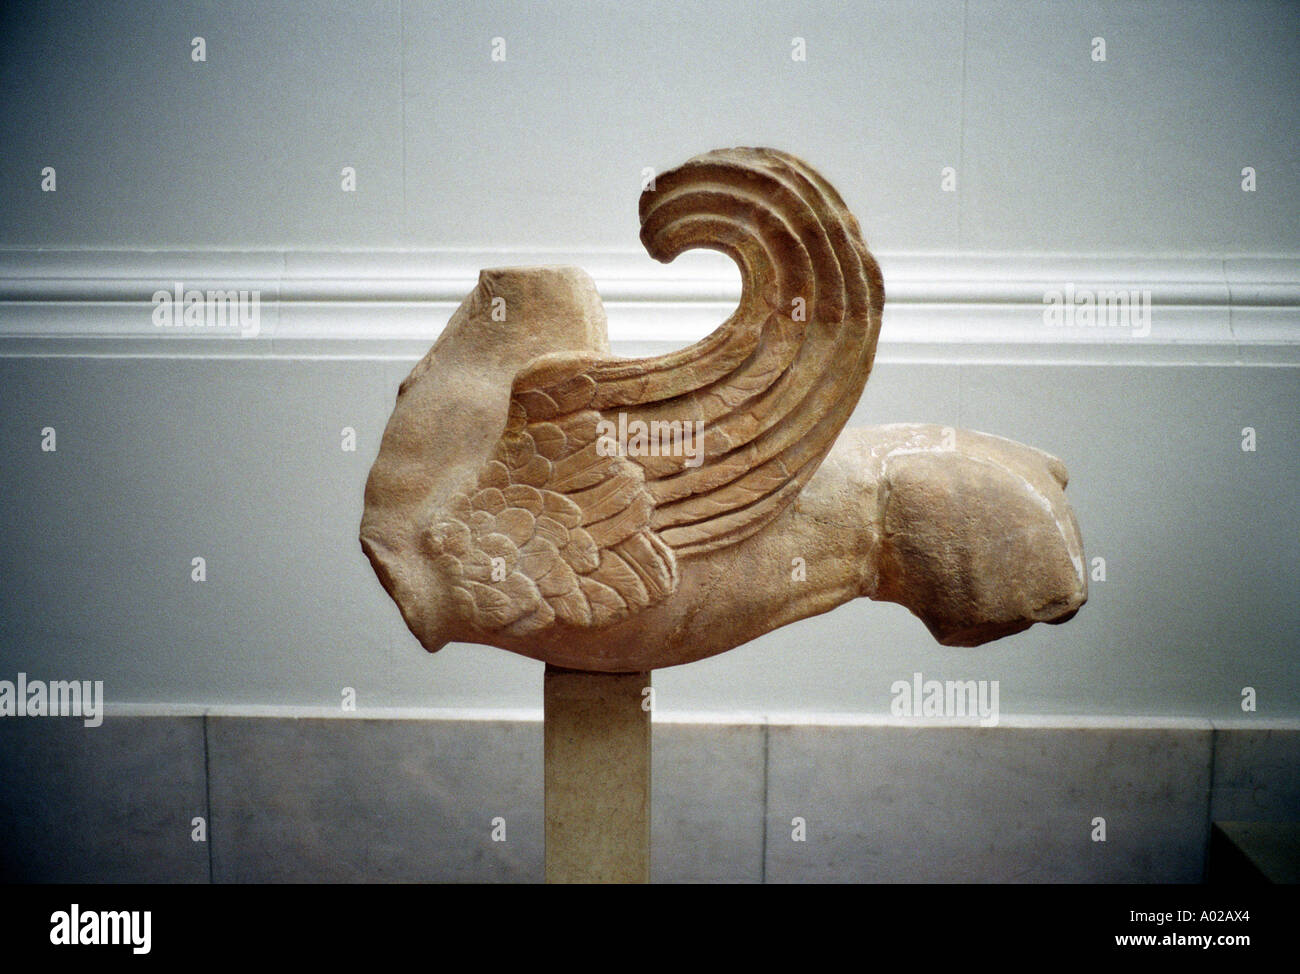 Berlín, Alemania. Interior del Museo Pergamon mostrando artefactos griegos originales. Foto de stock